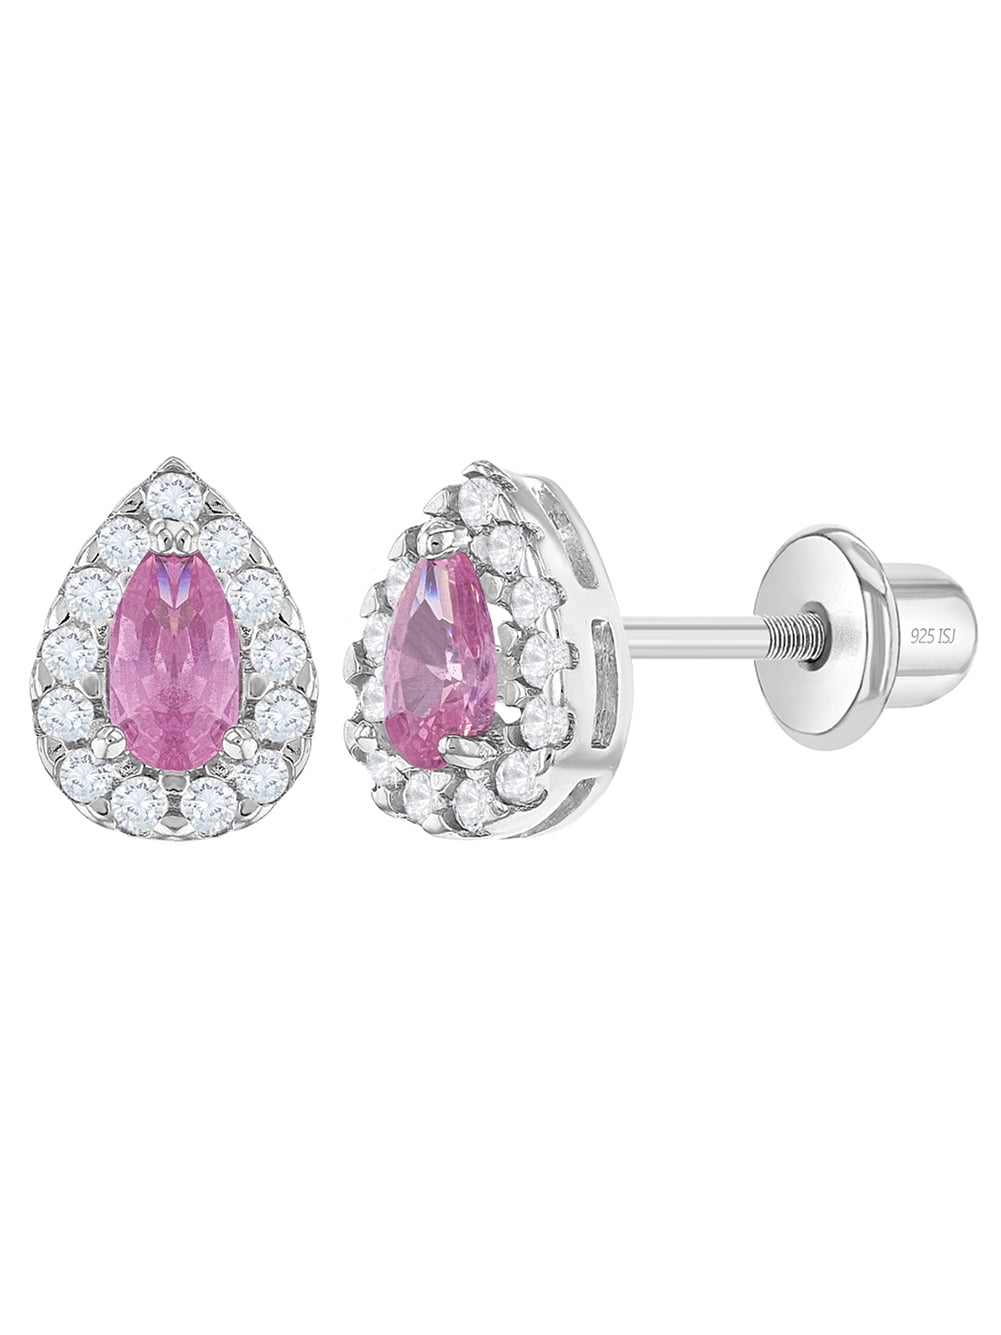 925 Sterling Silver Pink Enamel Heart Dangle Earrings for Girls Teens 